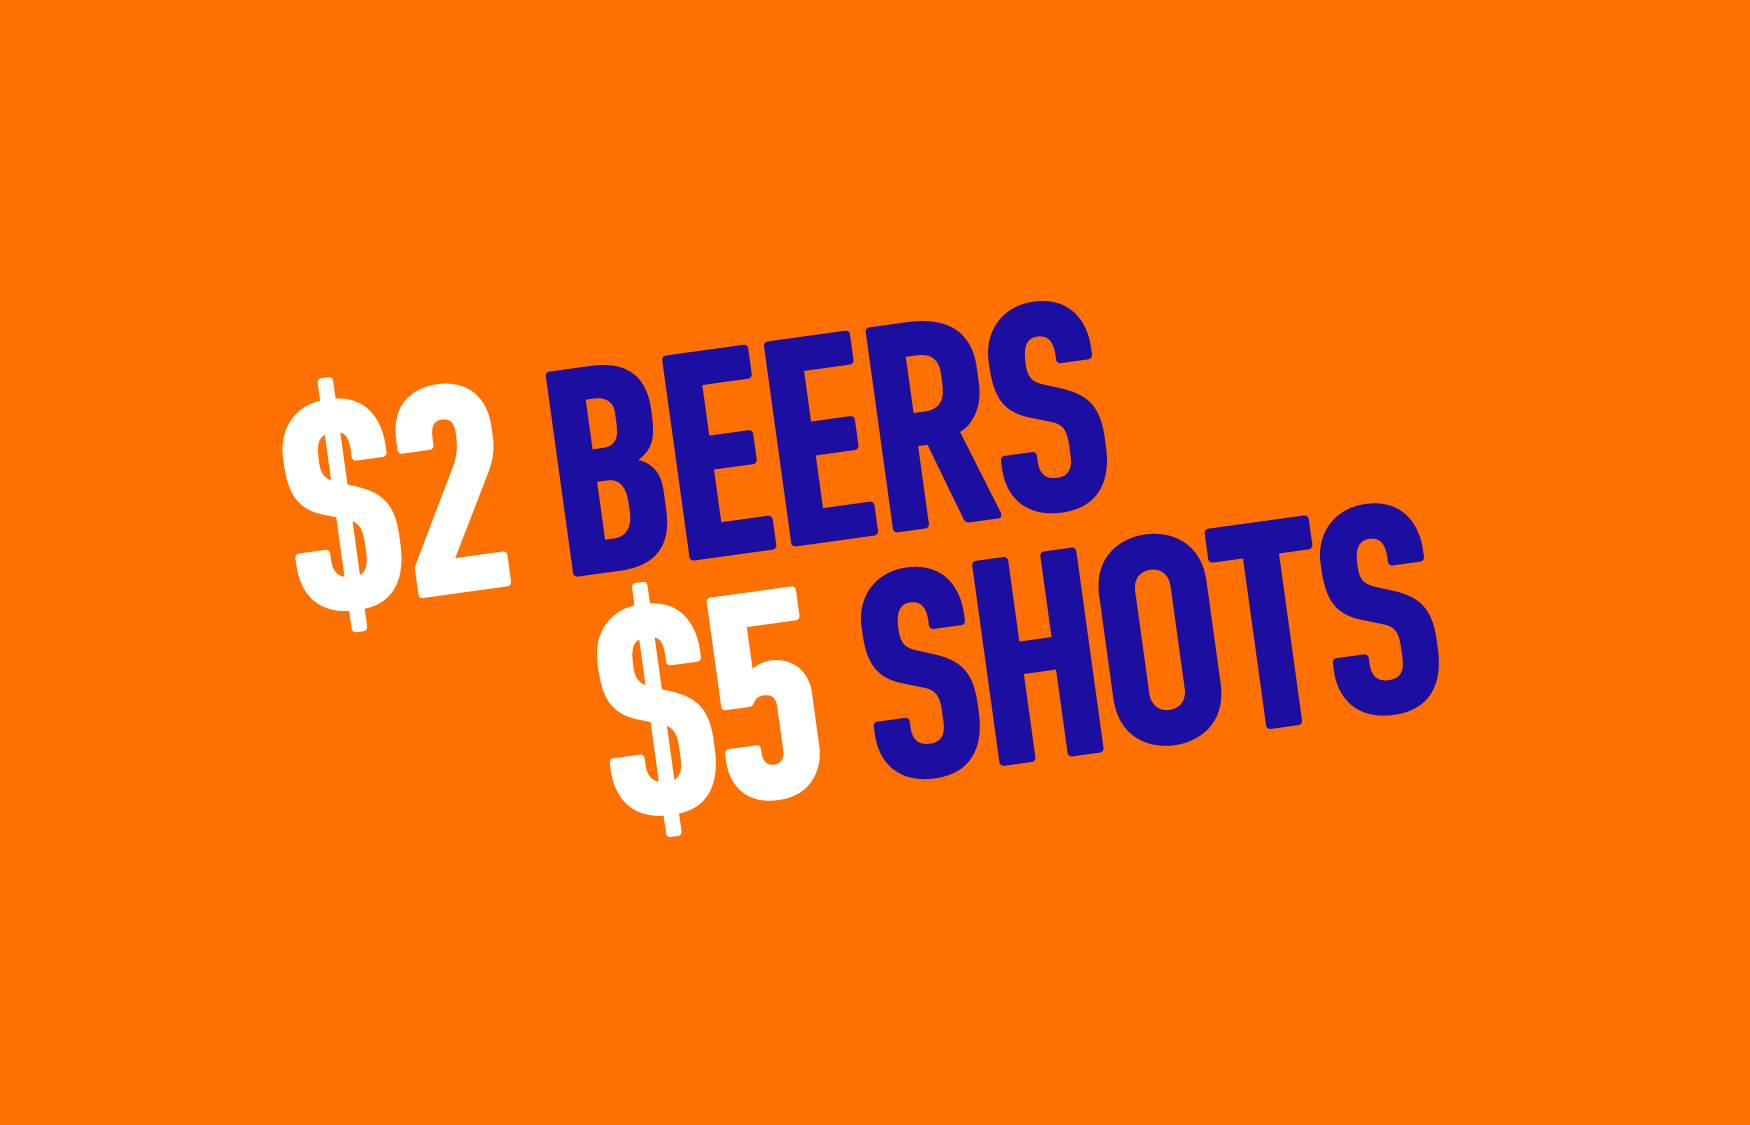 $2 Beers, $5 Shots